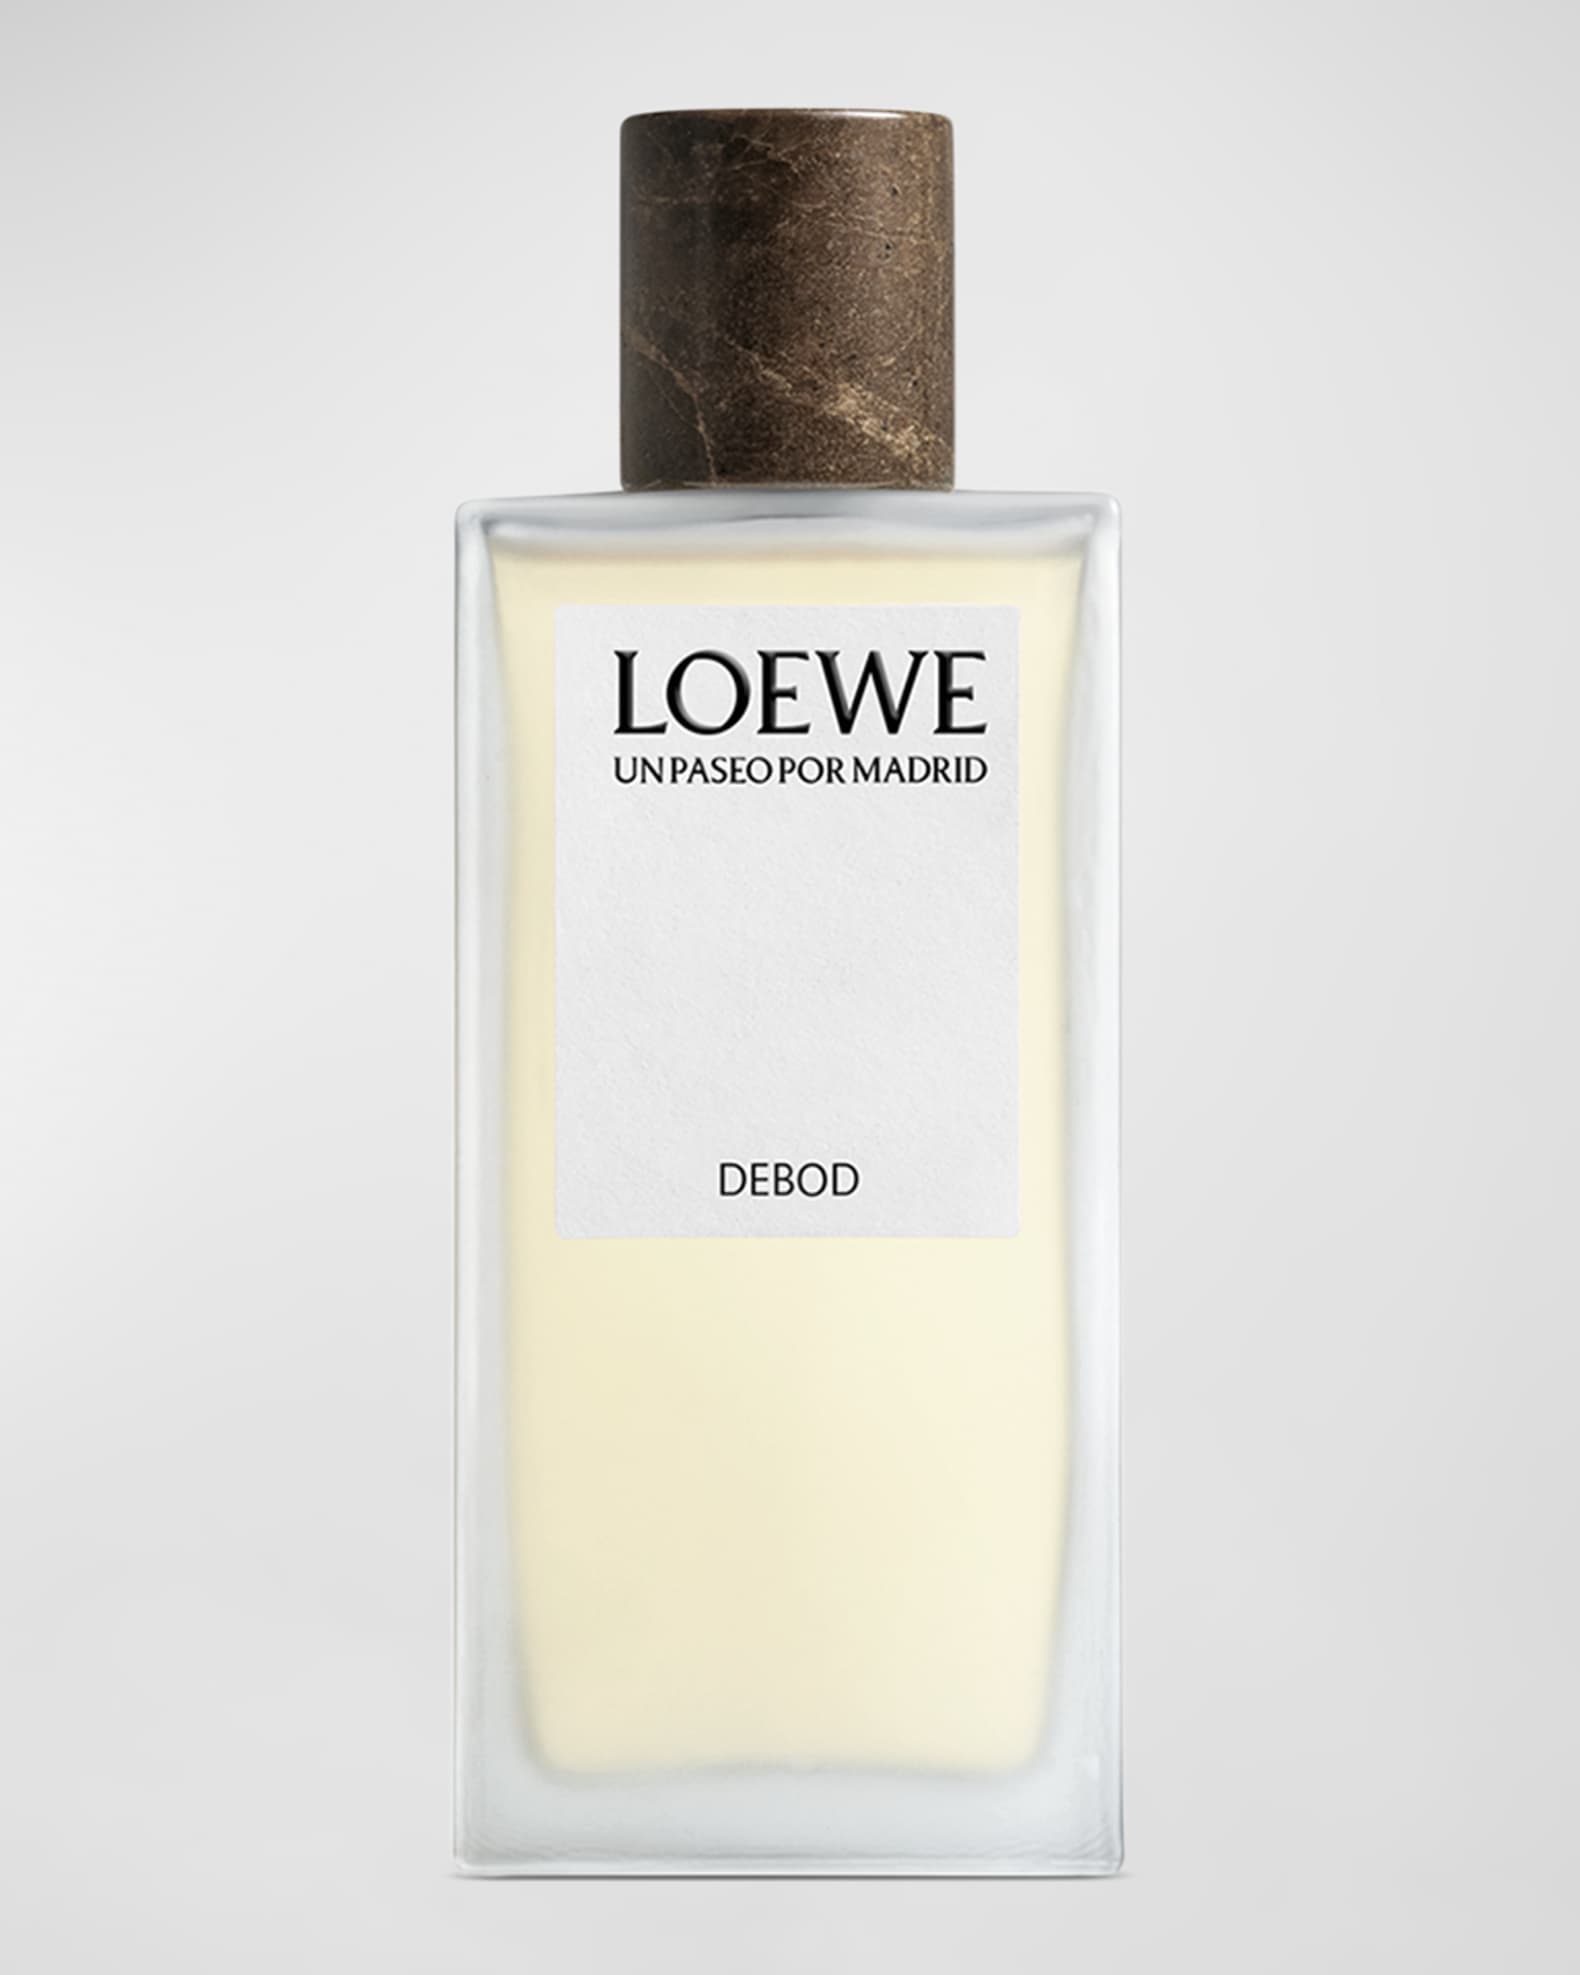 Men's Perfume 100Ml Essence 30% LOUIS VUITTON-SUR LA ROUTE